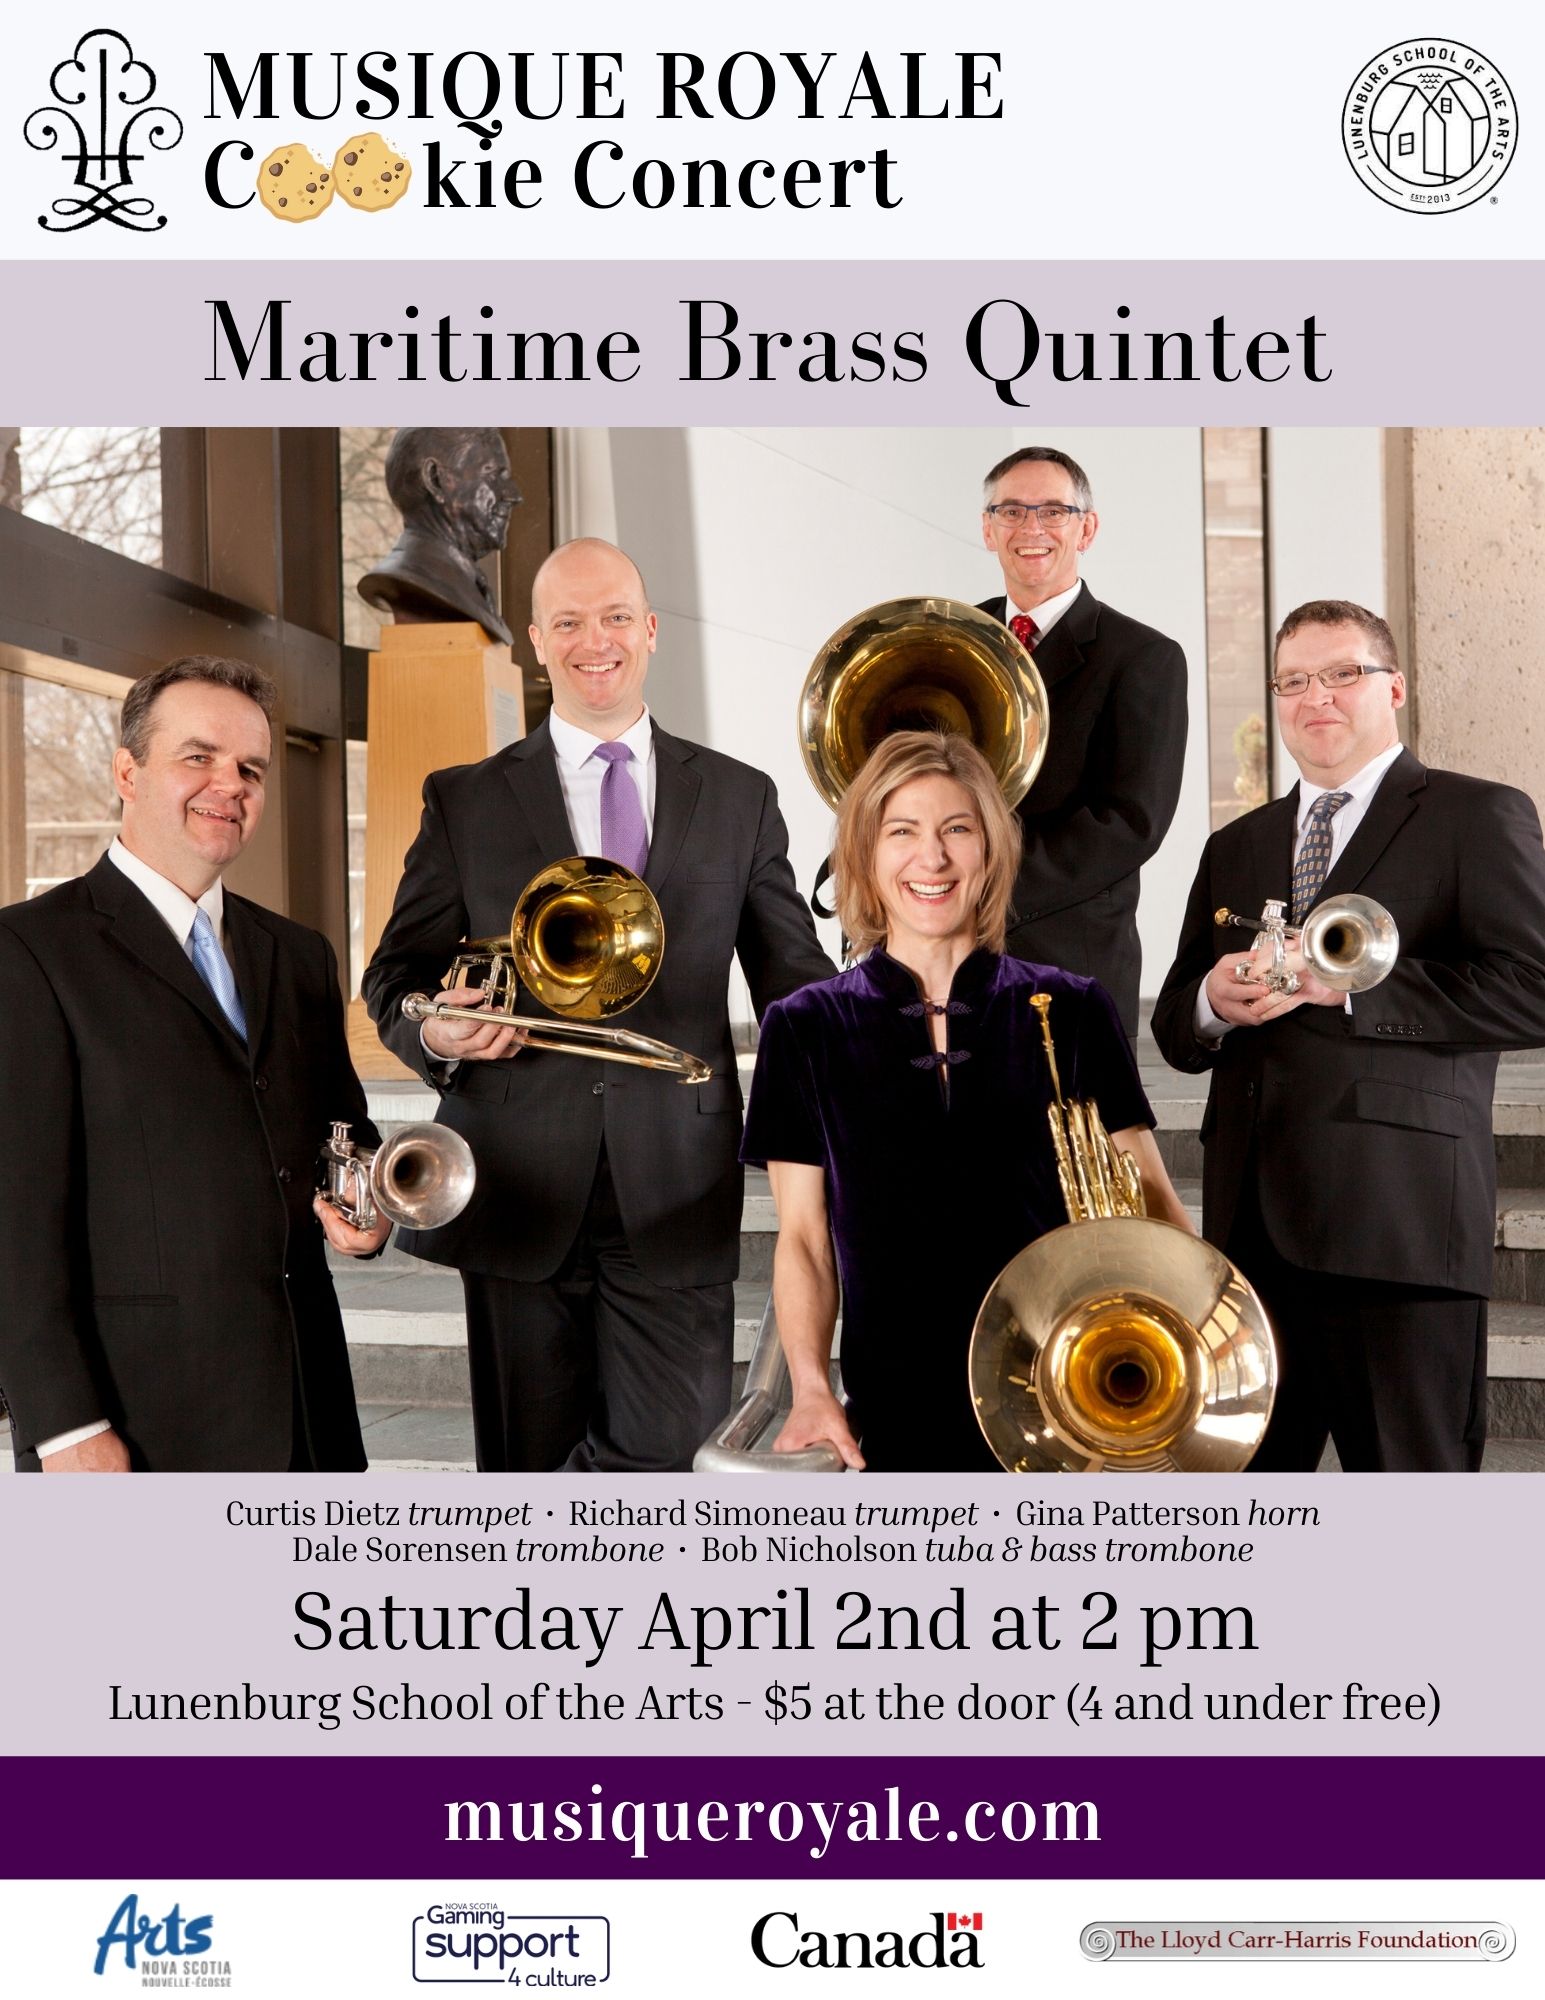 MUSIQUE ROYALE Cookie Concerts present Maritime Brass Quintet – Lunenburg  School of the Arts